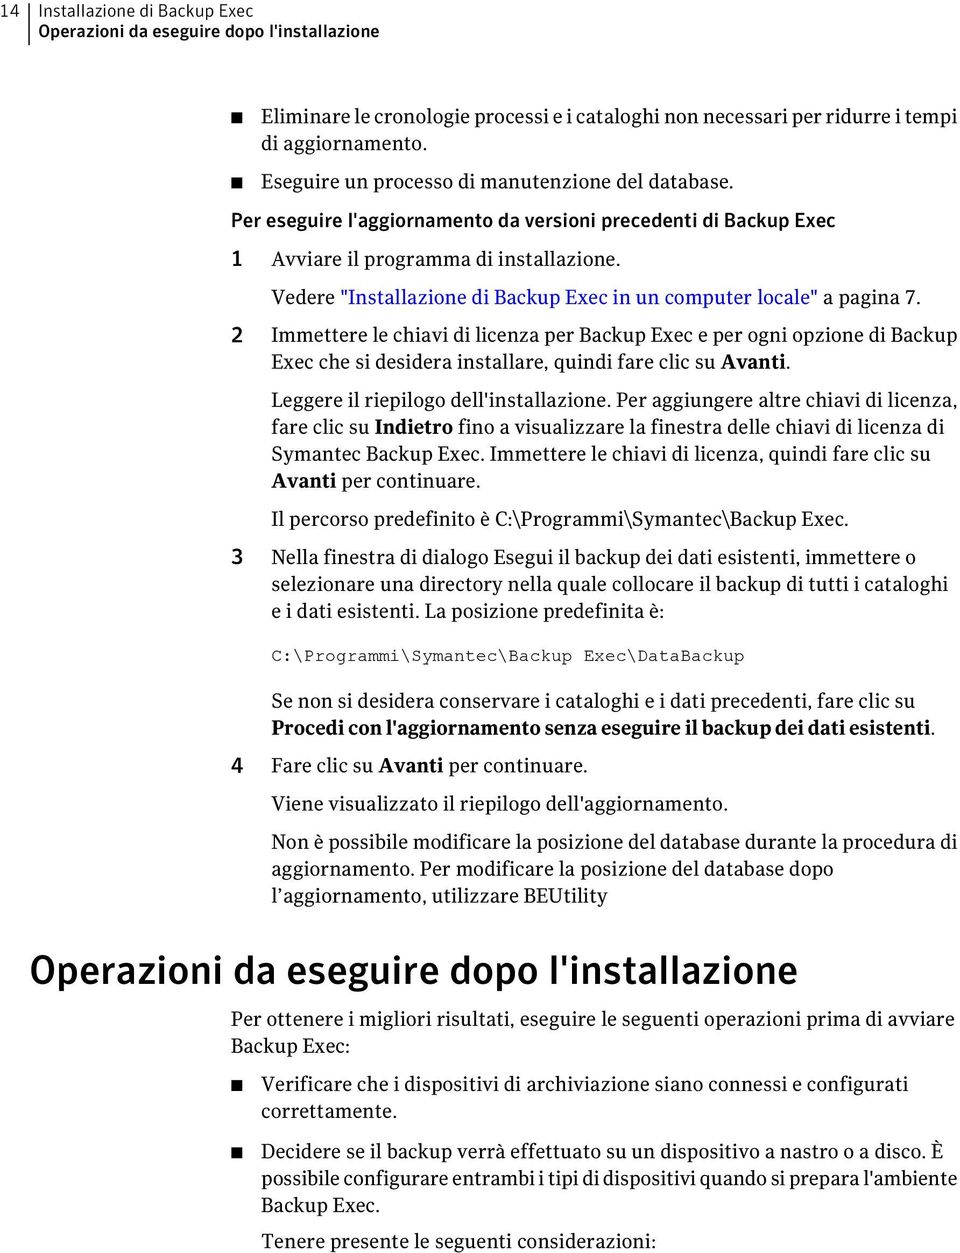 Vedere "Installazione di Backup Exec in un computer locale" a pagina 7.